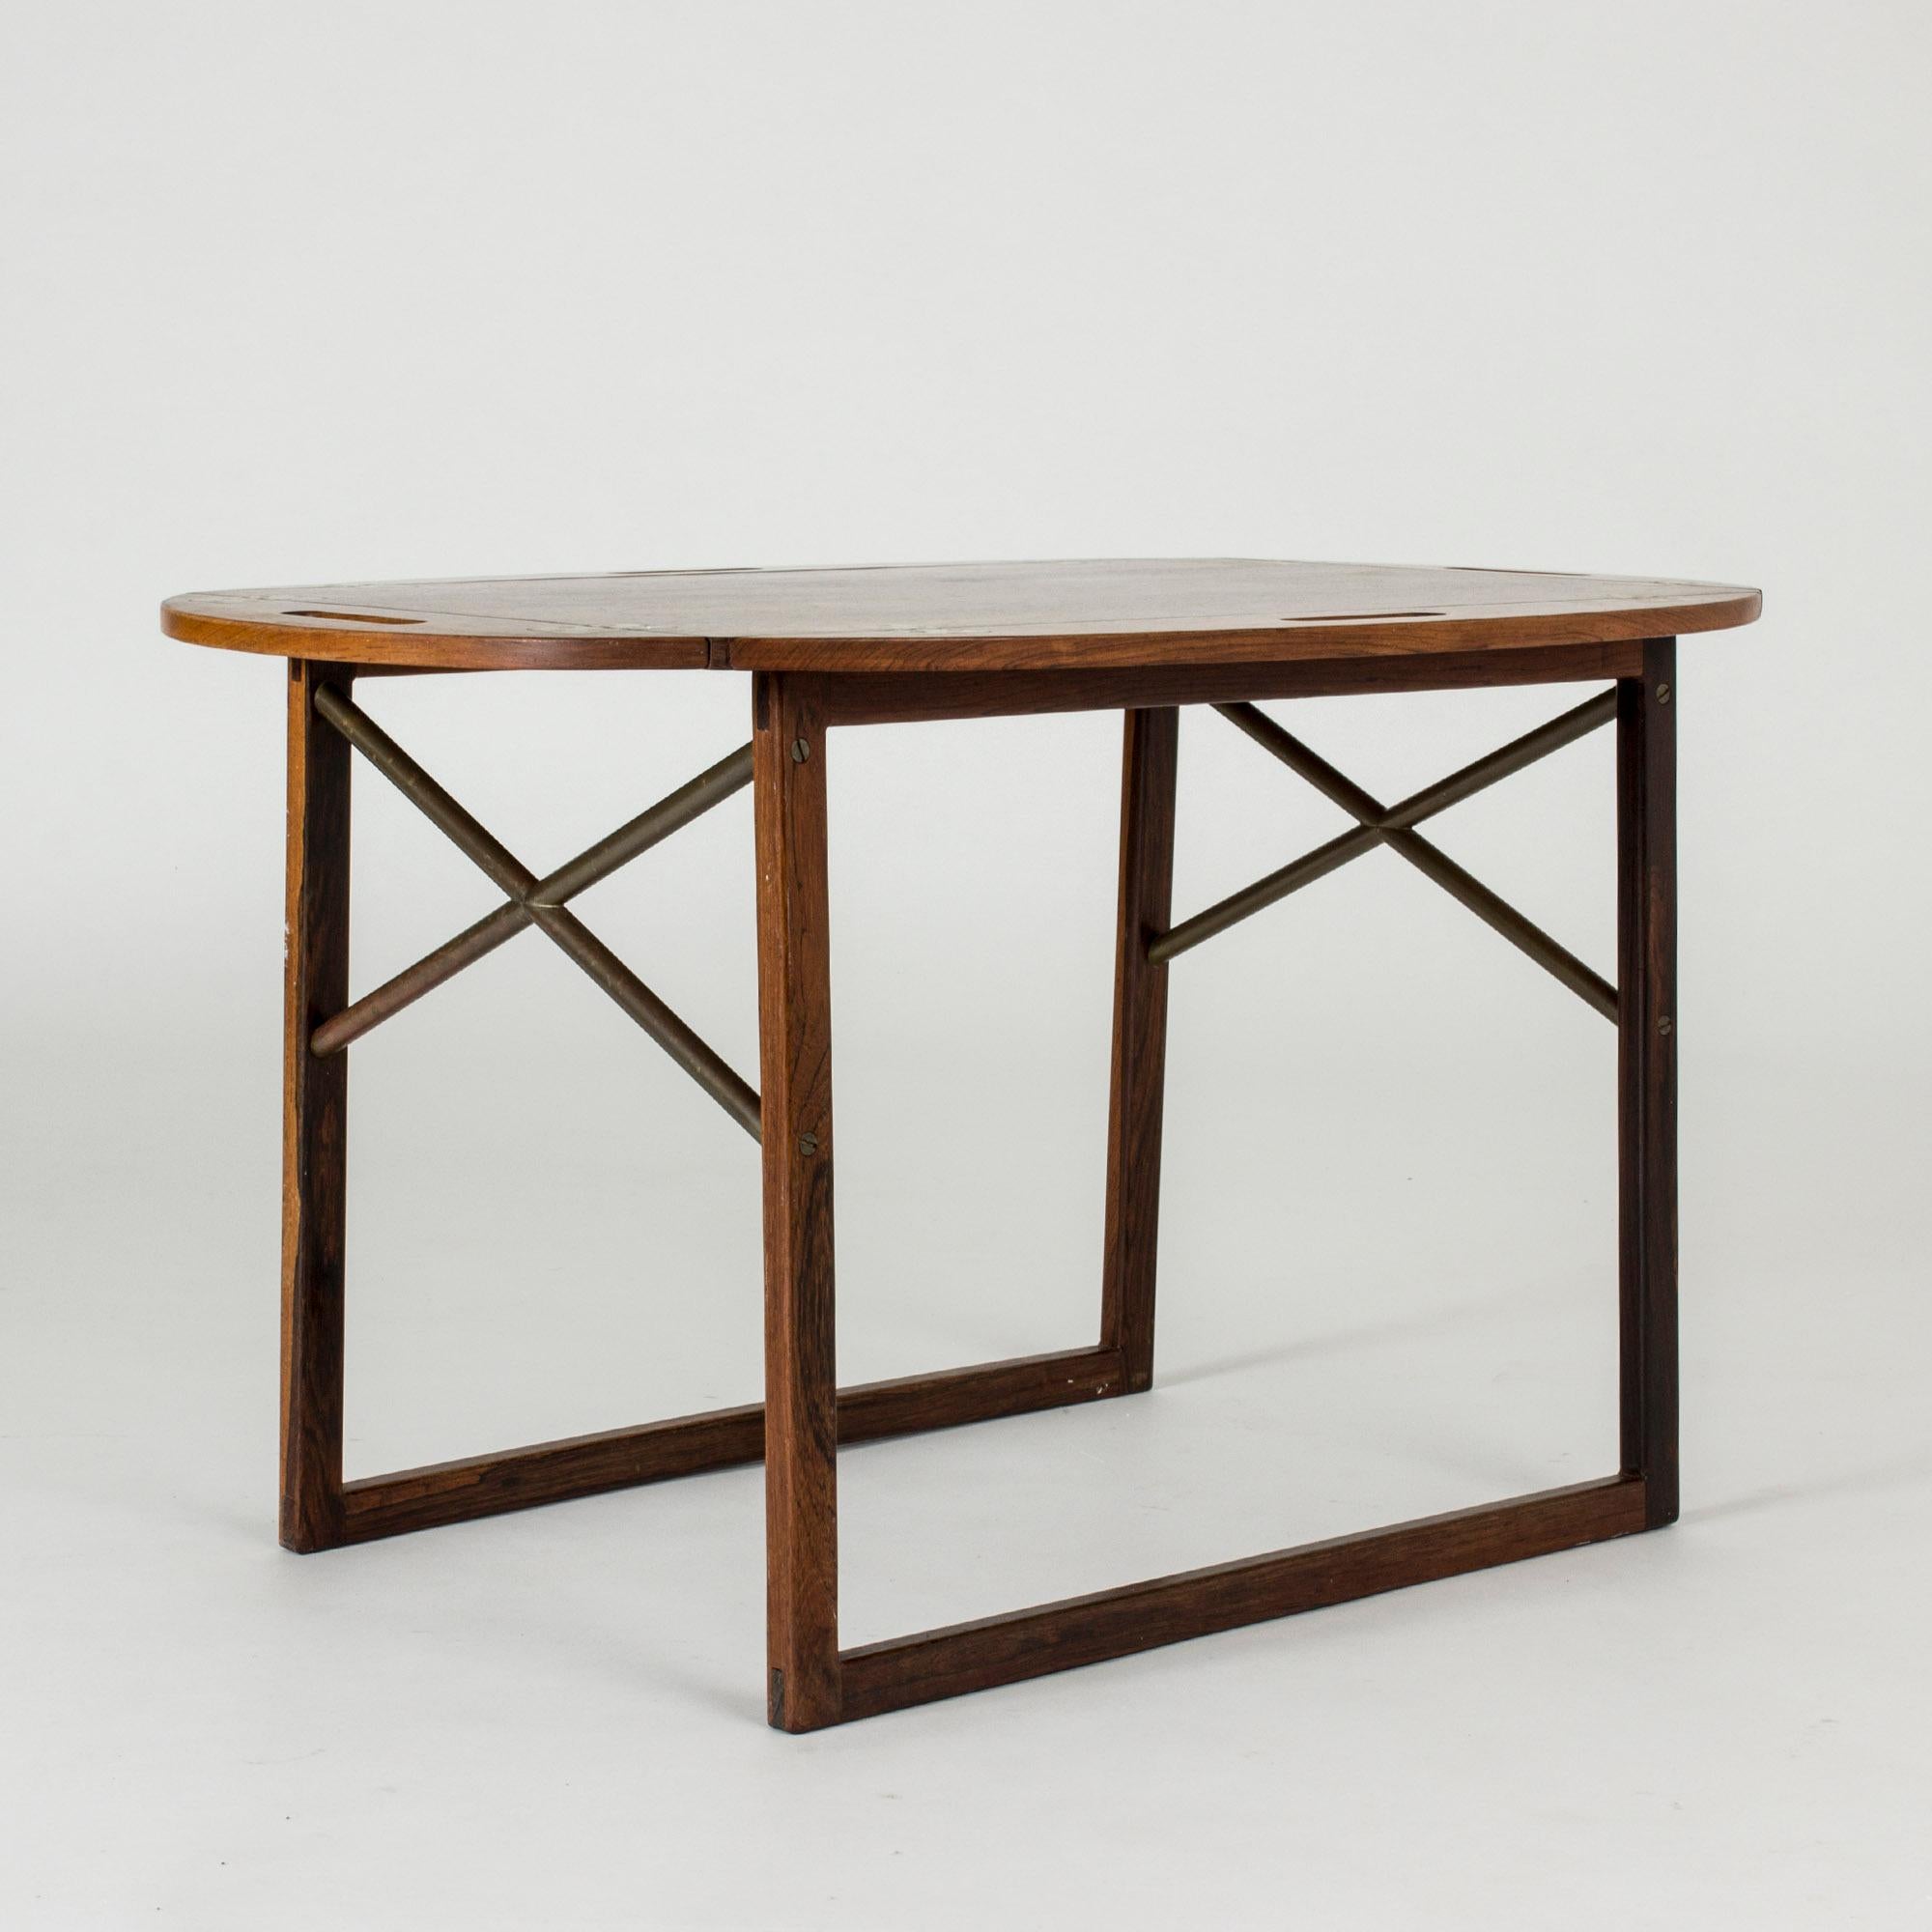 Élégante table basse en bois de rose de Svend Langkilde, dont le plateau peut être soulevé pour servir de plateau. Quatre poignées et la possibilité de relever les bords de la table. La base soignée en forme de traîneau avec des détails en forme de